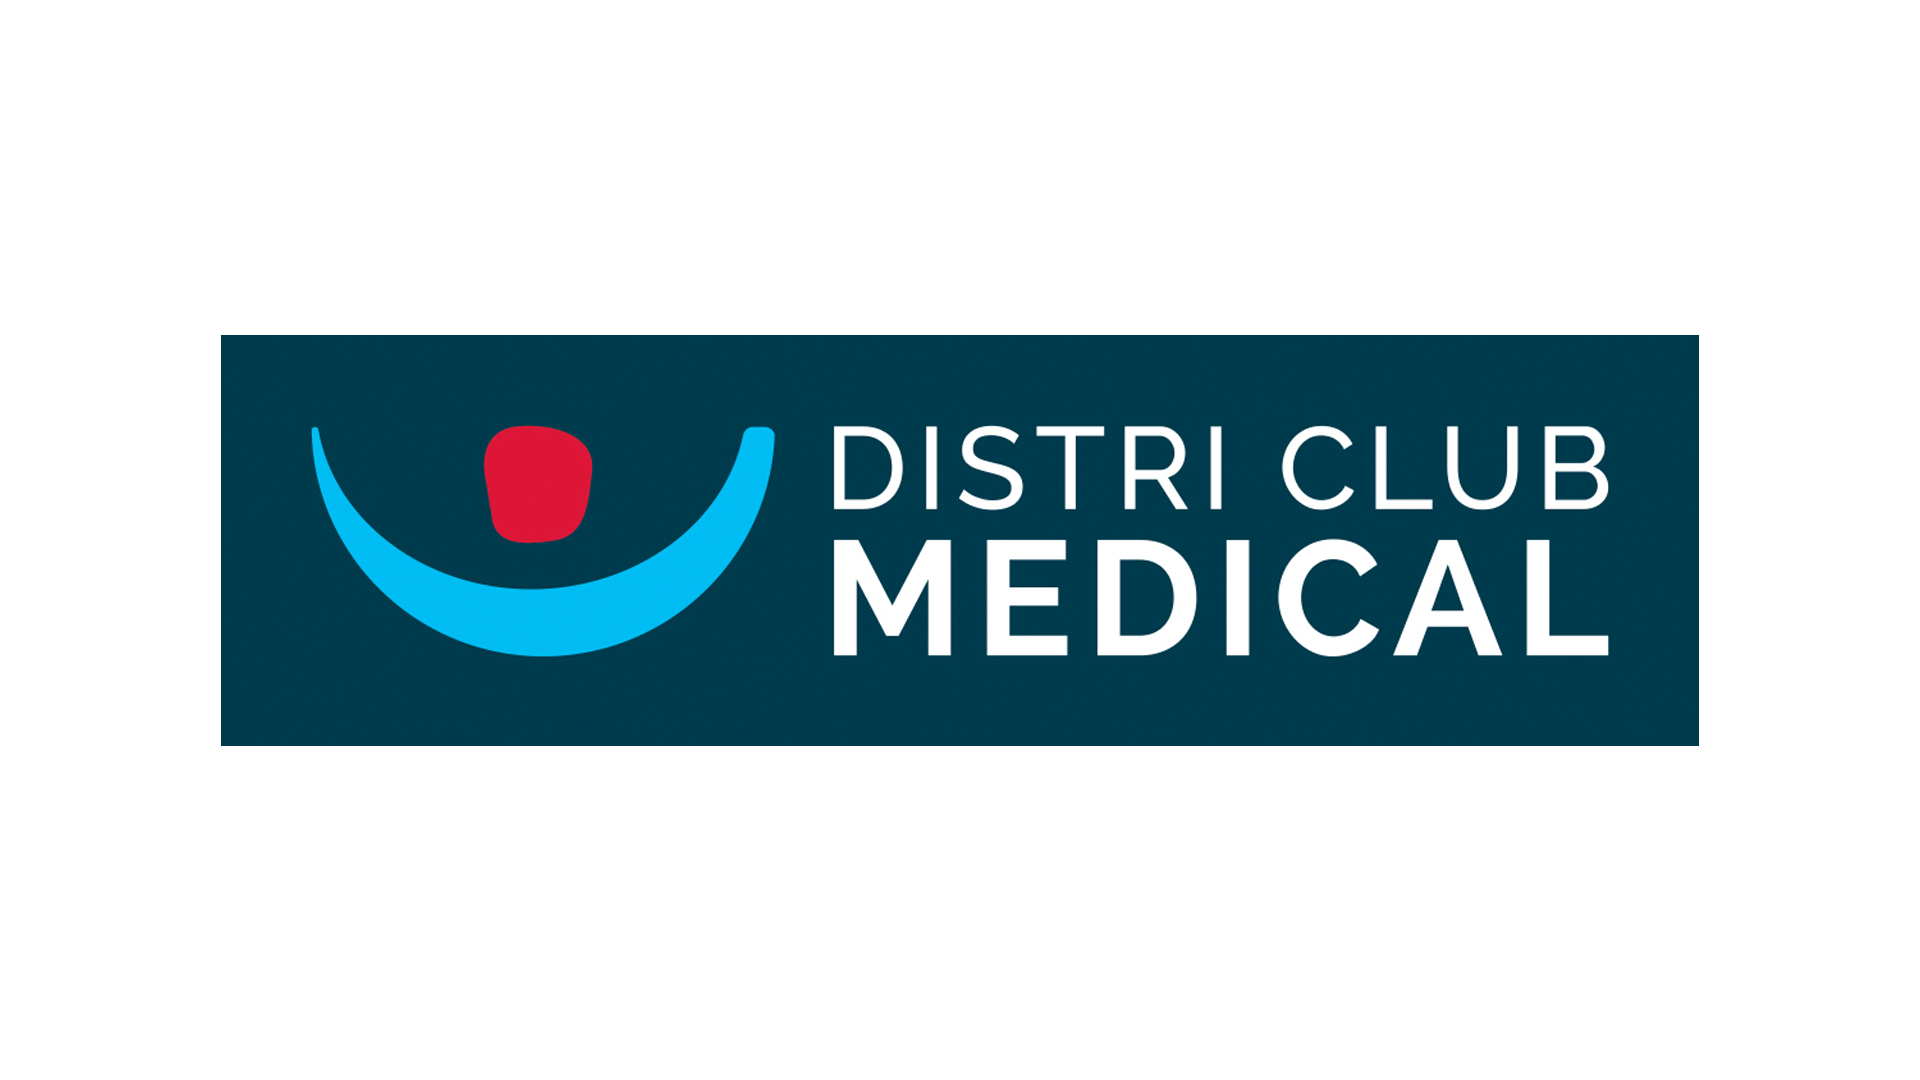 Distri Club Medical